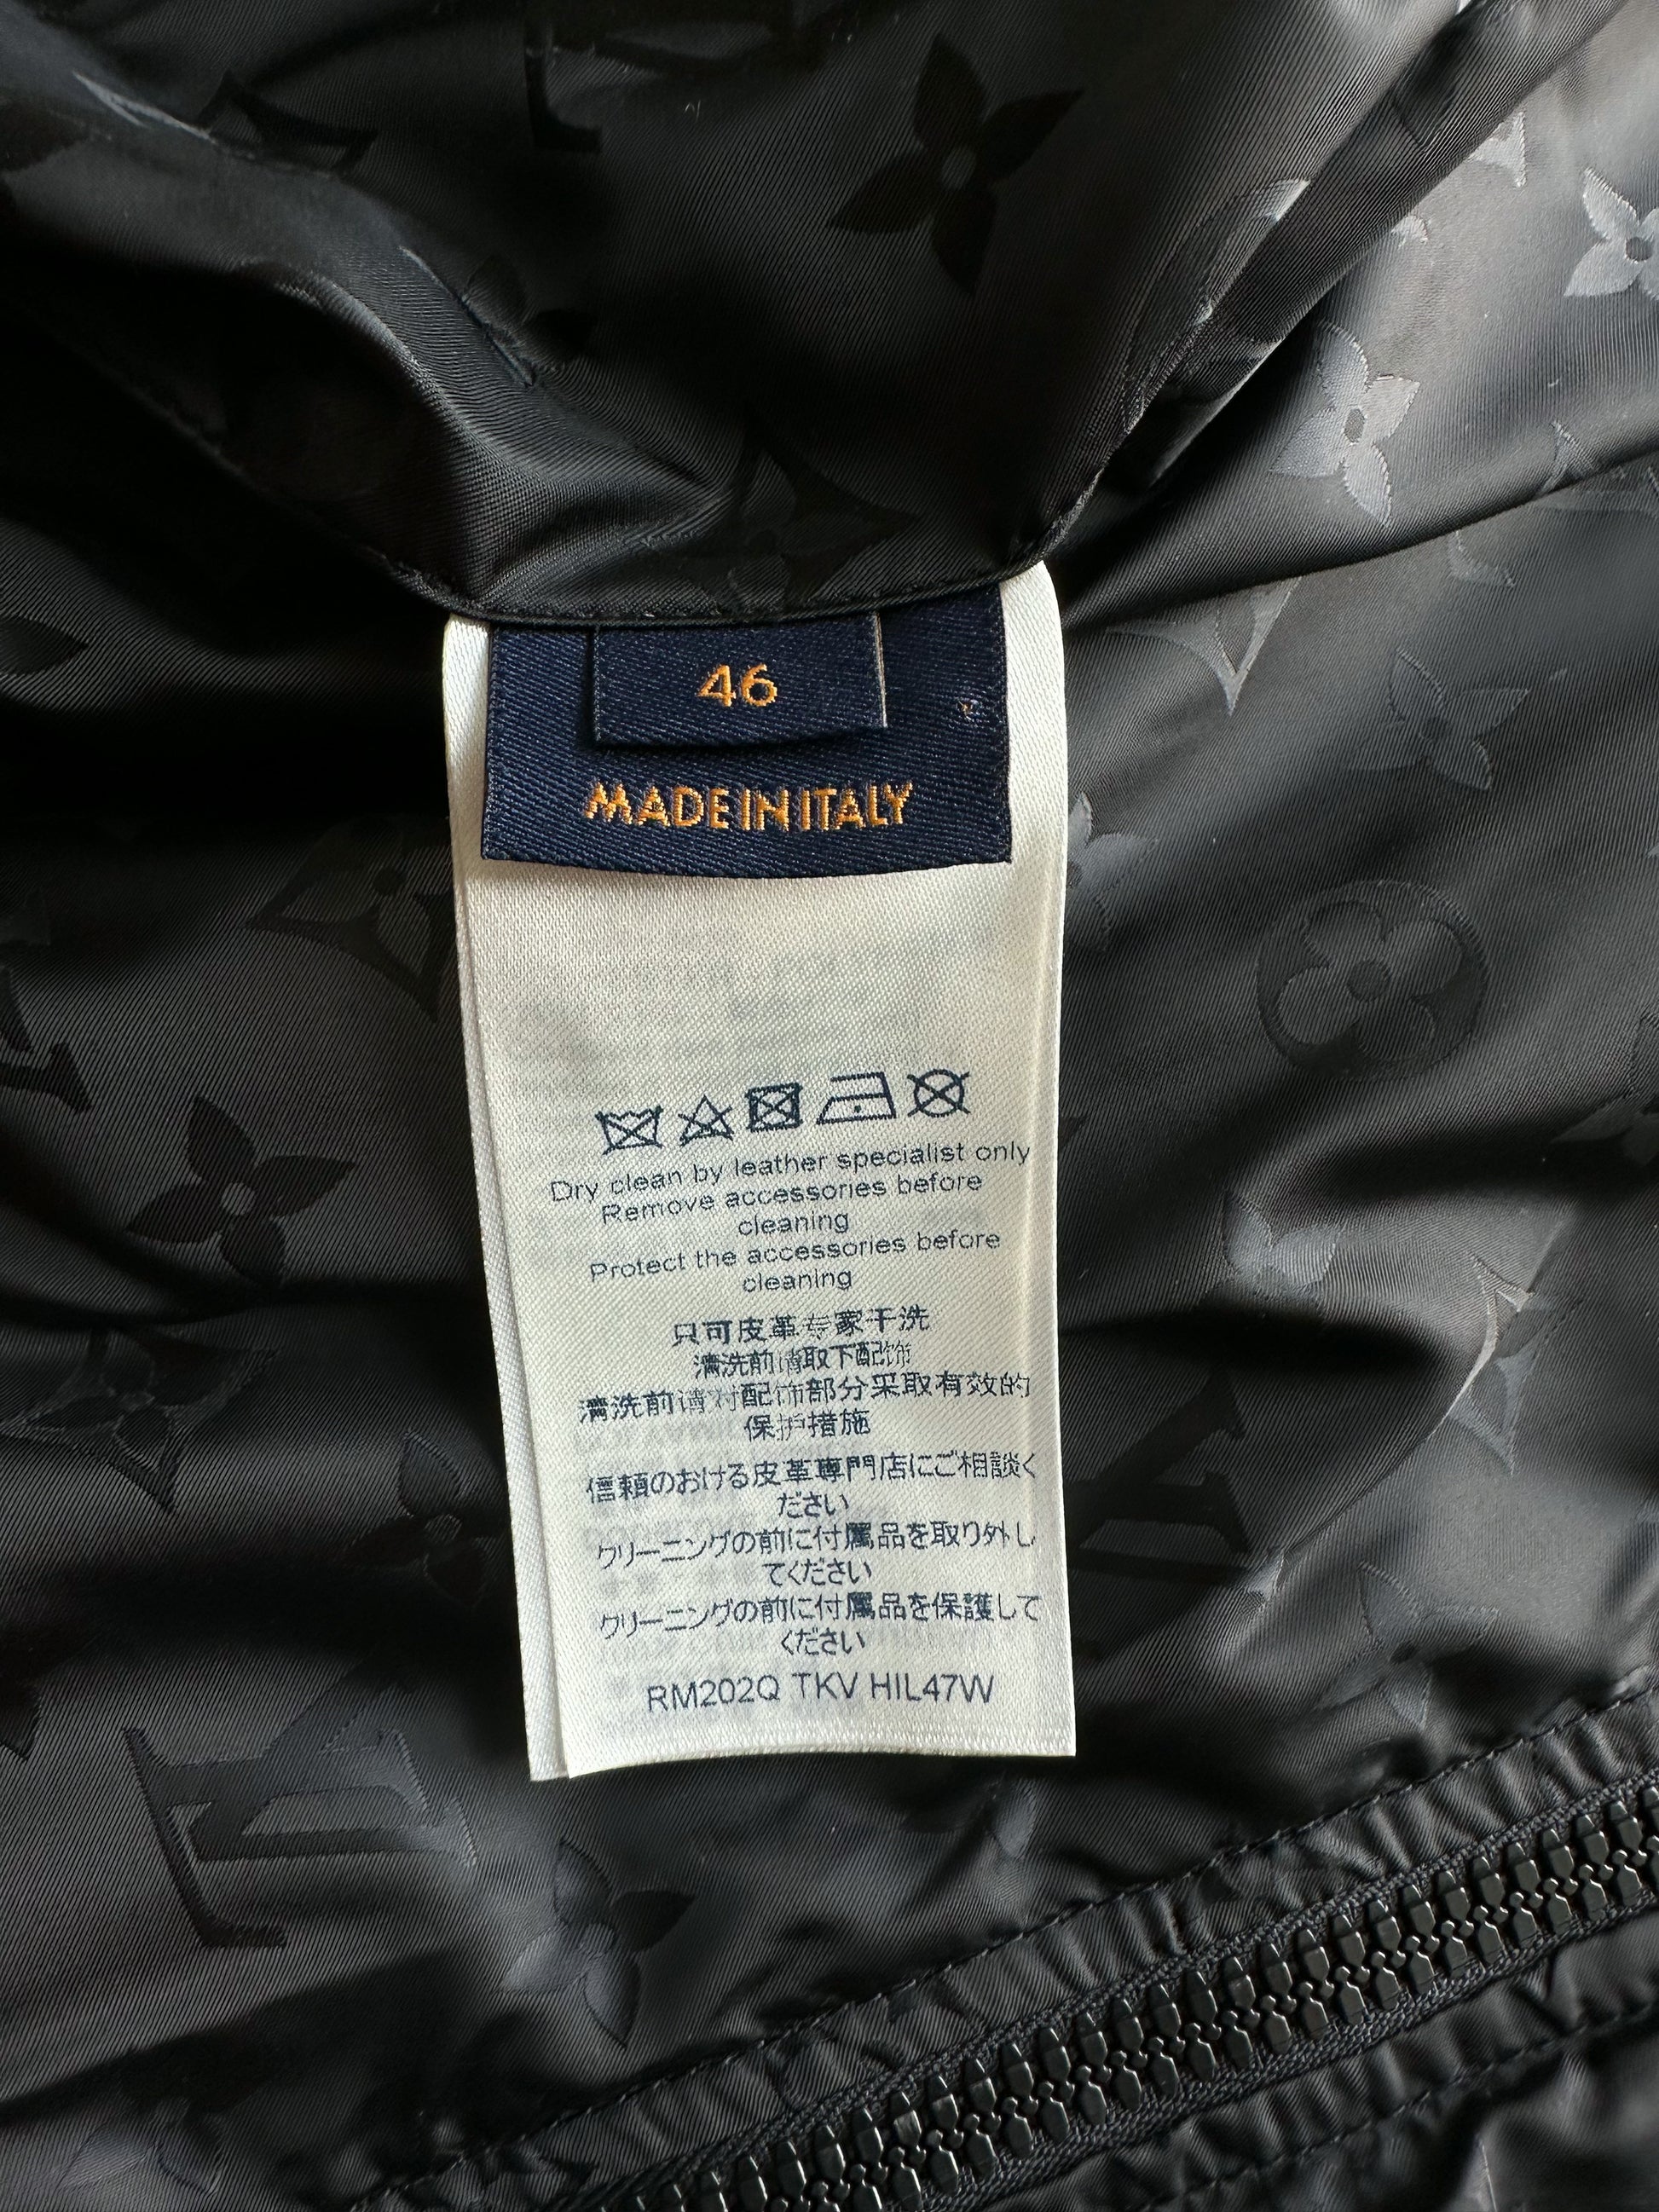 Louis Vuitton - Reversible Leather Technical Jacket - Black - Men - Size: 54 - Luxury